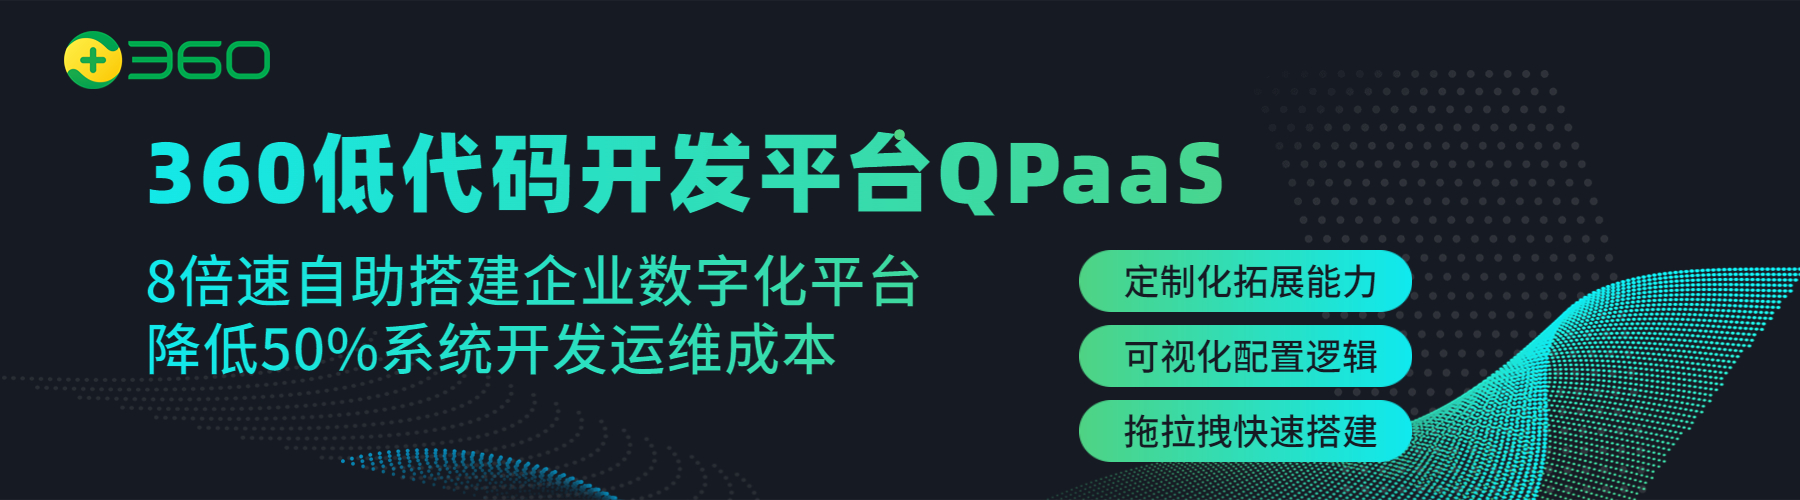 360低代码开发平台QPaaS